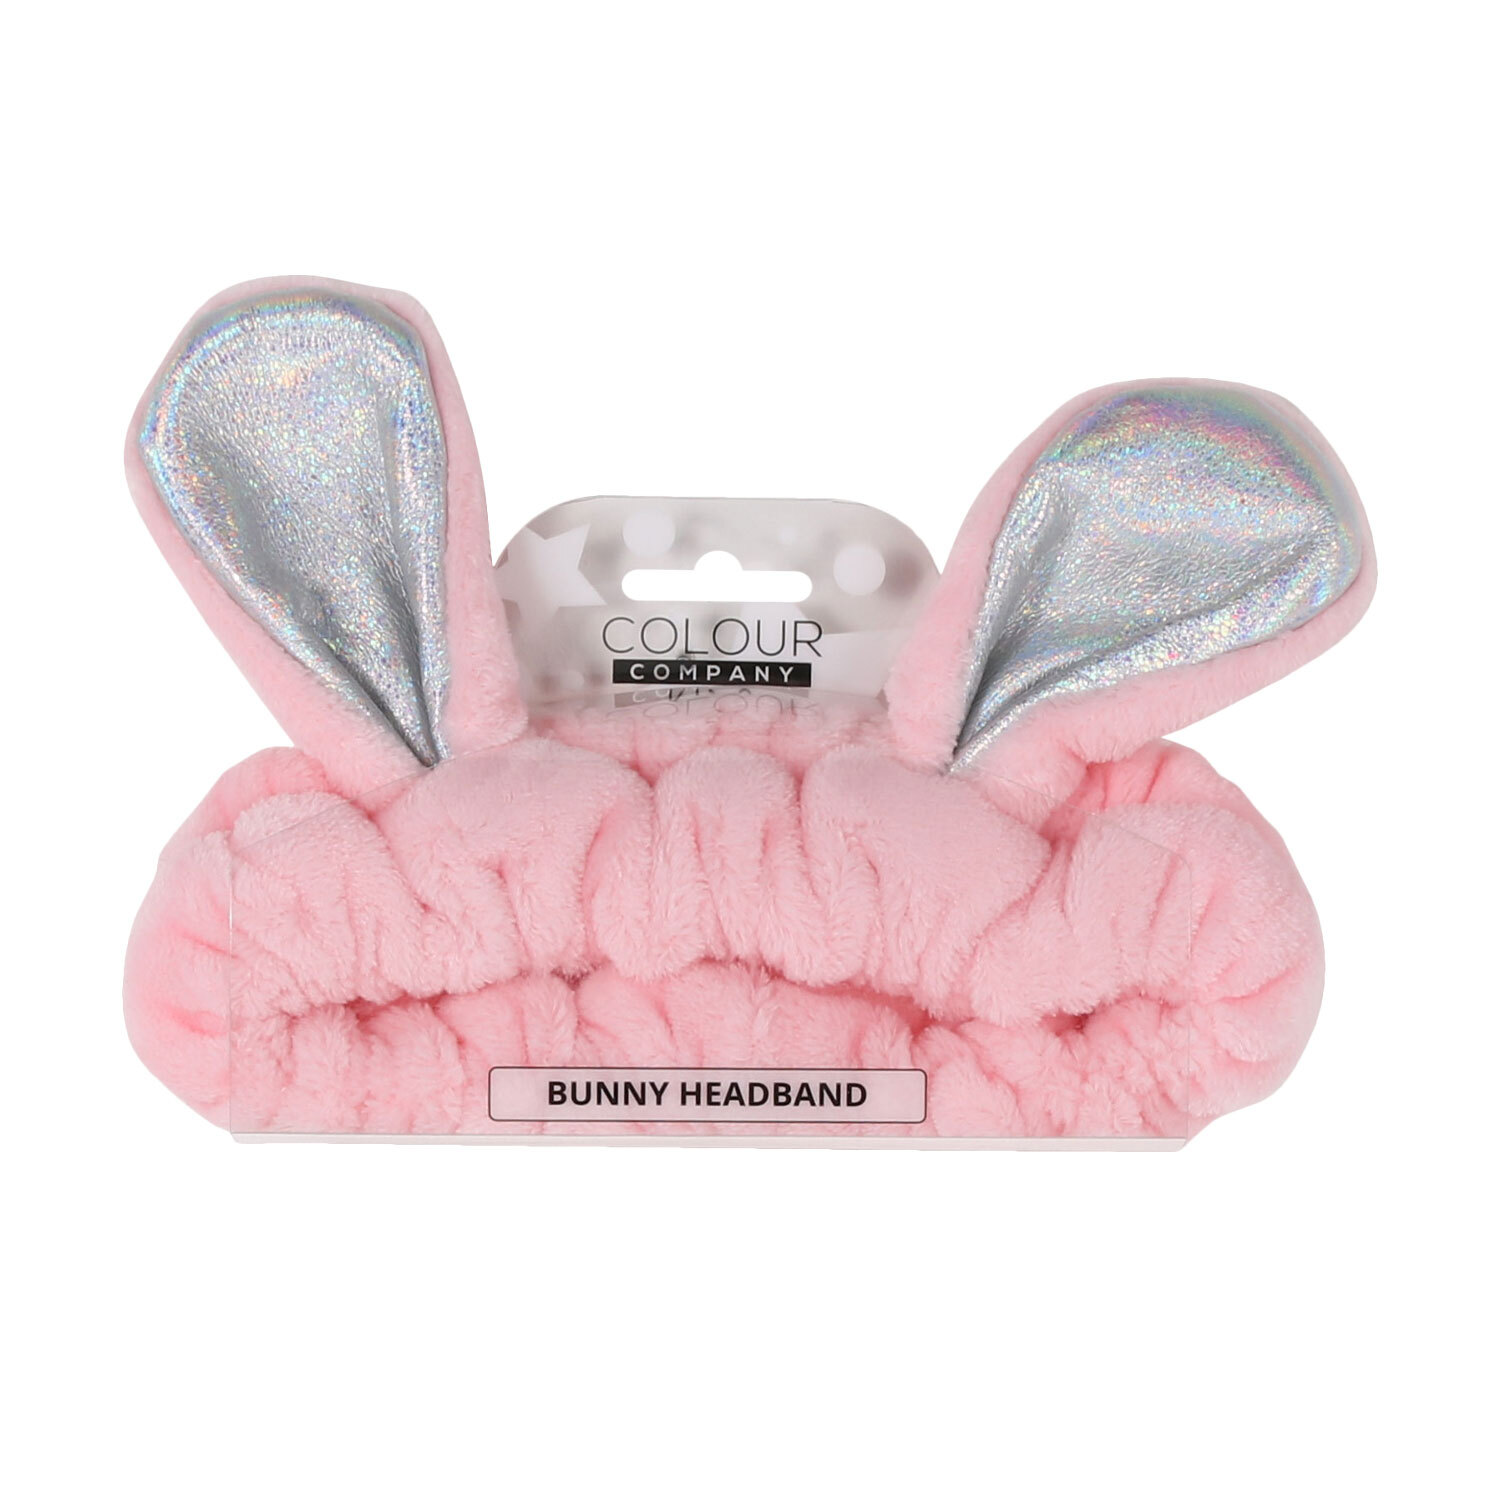 Colour Company Pink Bunny Headband Image